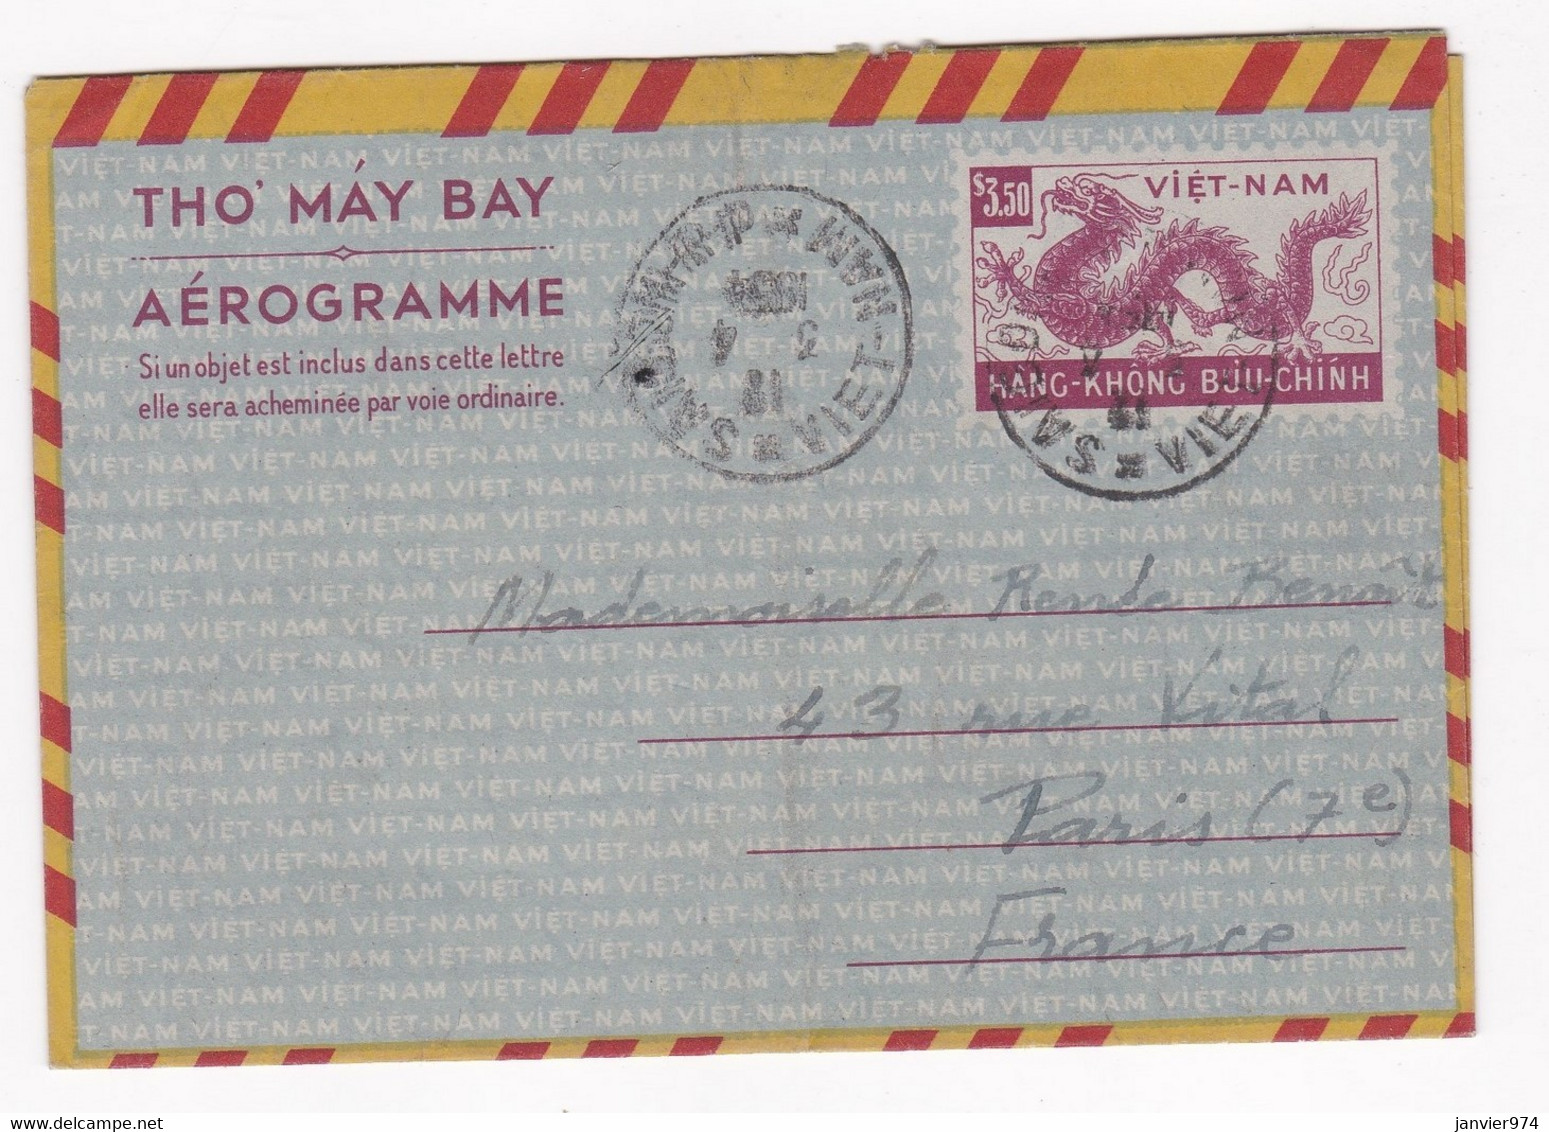 Aérogramme 1954 De Guittard Banque D’Indochine à Saigon à Mlle Benoît Paris - Vietnam